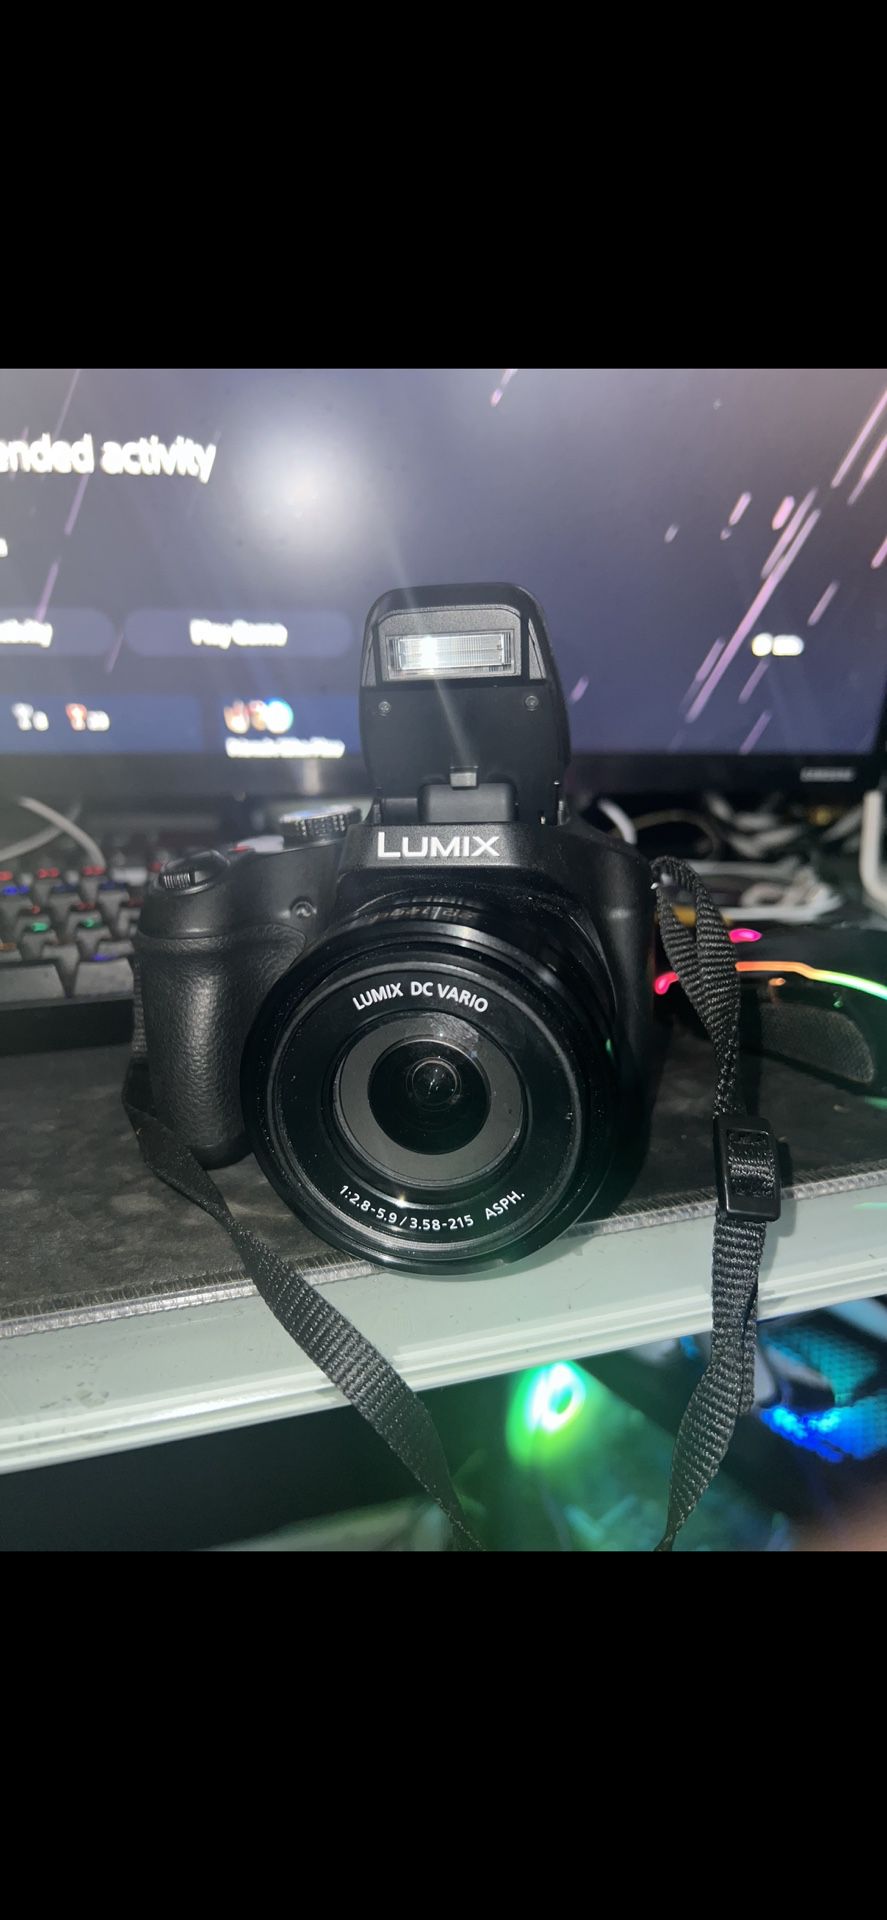 panasonic lumix 4k digital camera 18.1 megapixel video camera 60x zoom de vario 20-1200mm lens